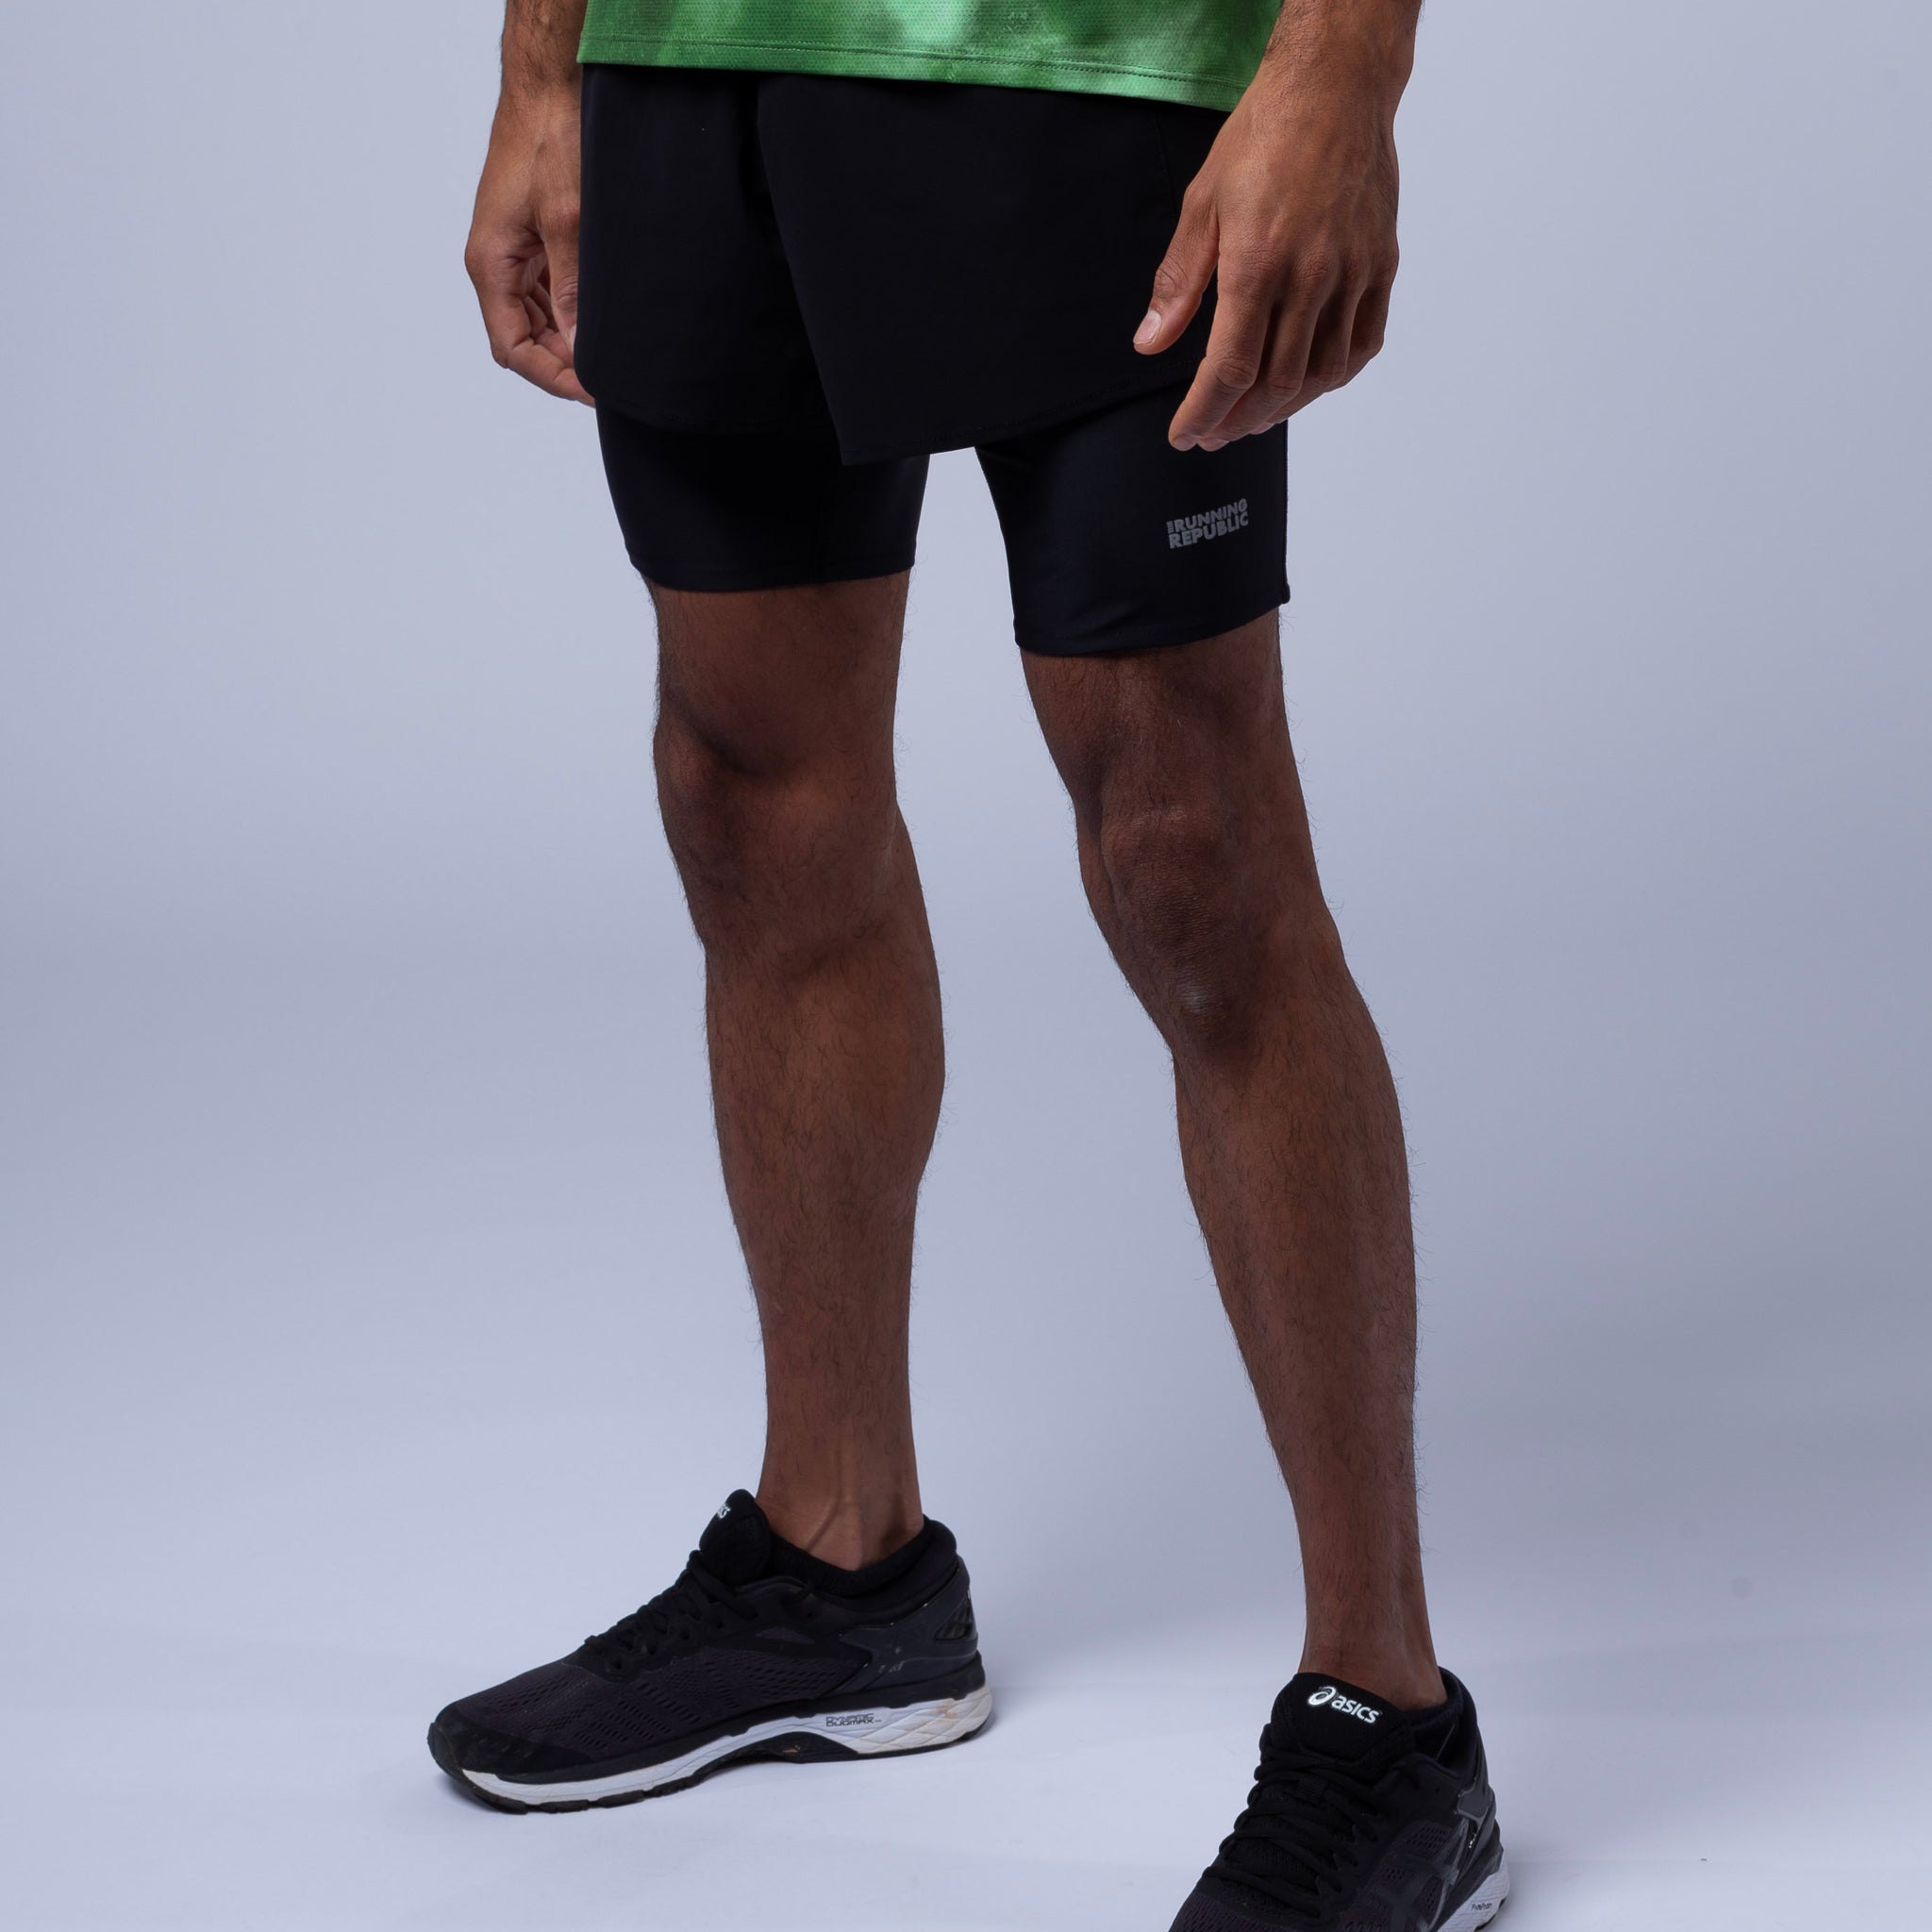 Nike Flex Woven Short 2.0 - Atlantic Sportswear